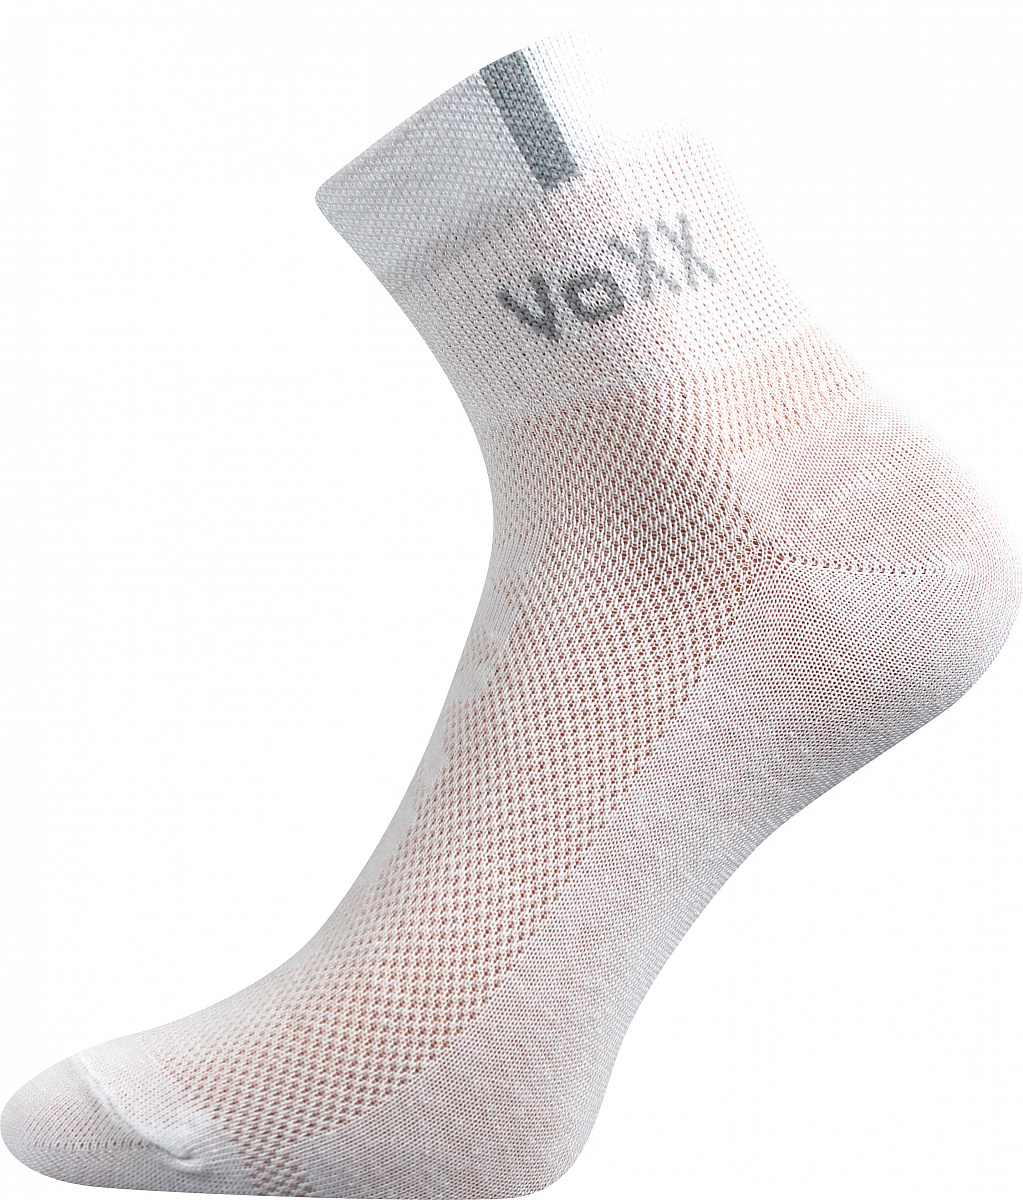 Ponožky s elastanem Voxx Fredy - bílé, 43-46